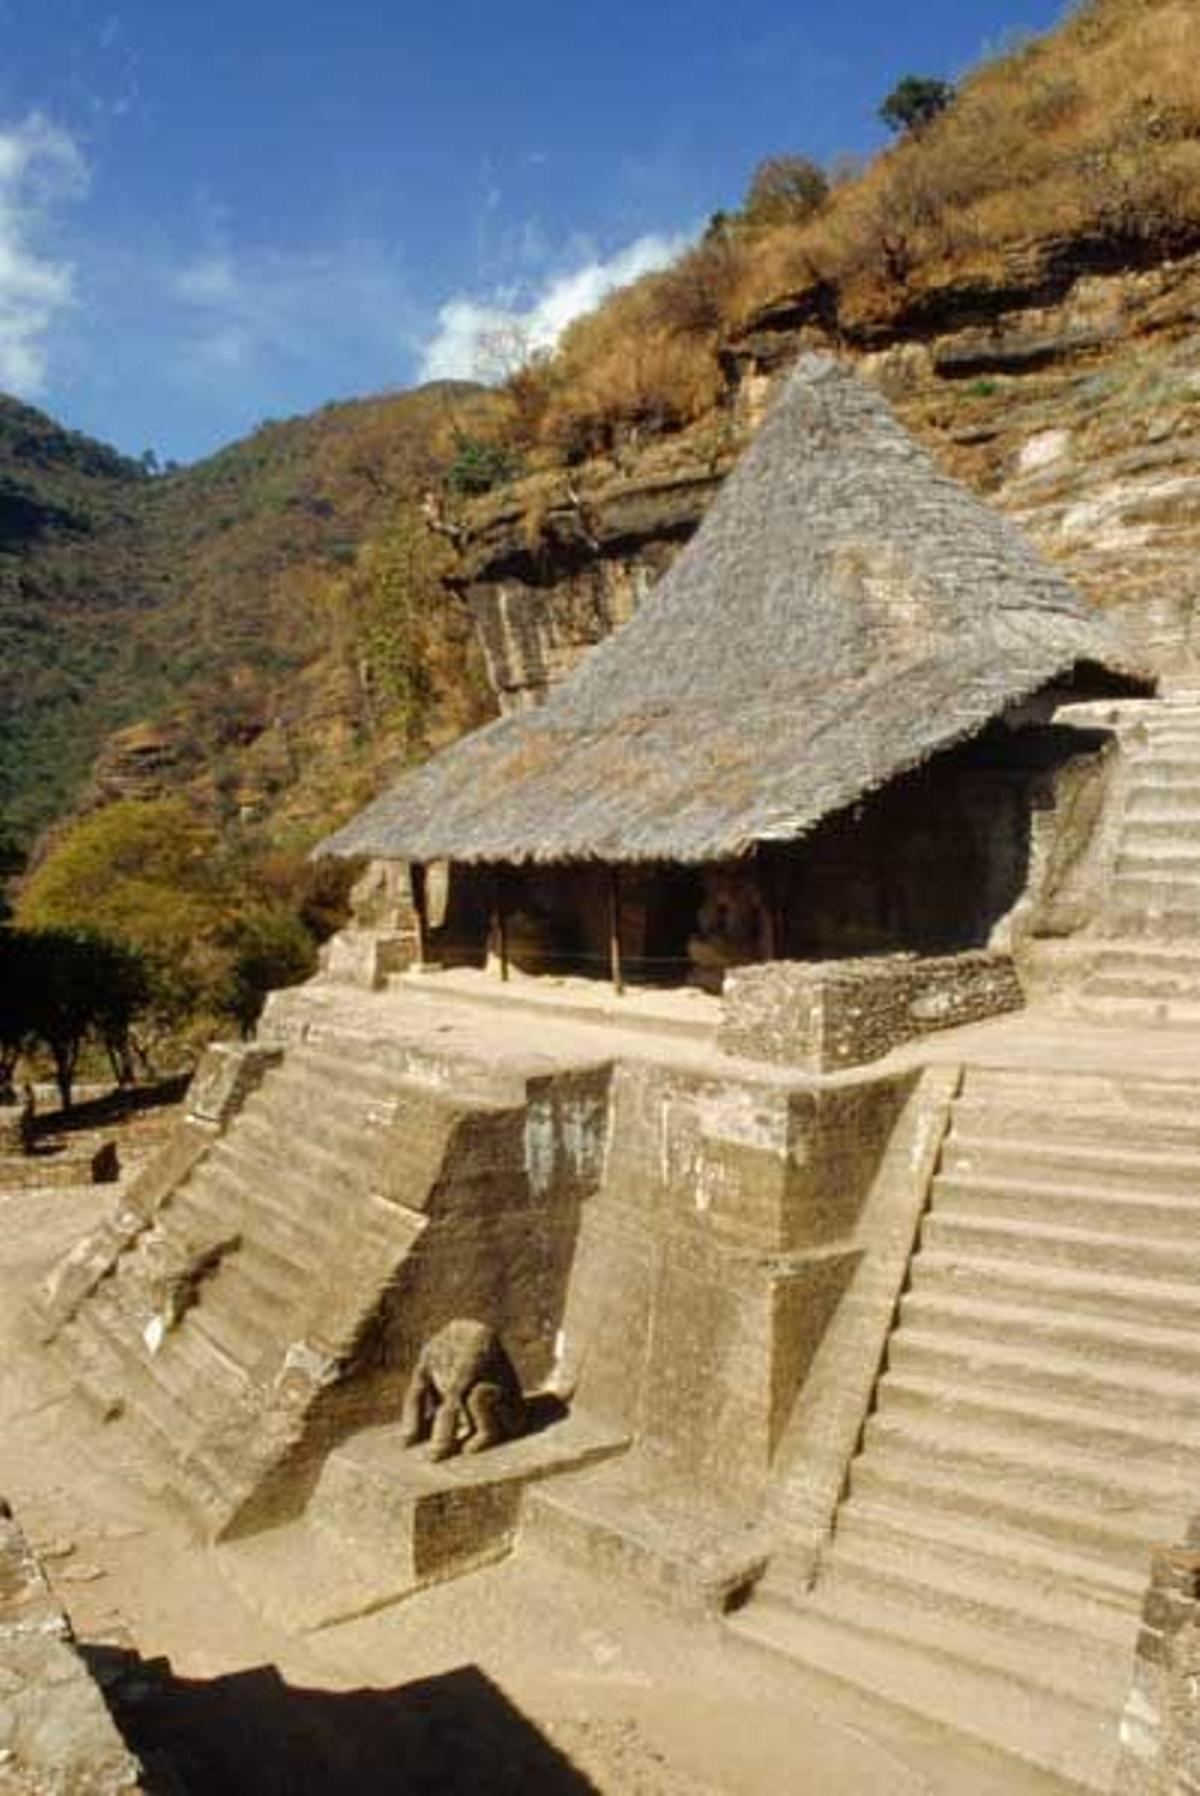 Centro donde se preparaban los guerreros aztecas en Malinalco, uno de los pueblos mágicos de la región.